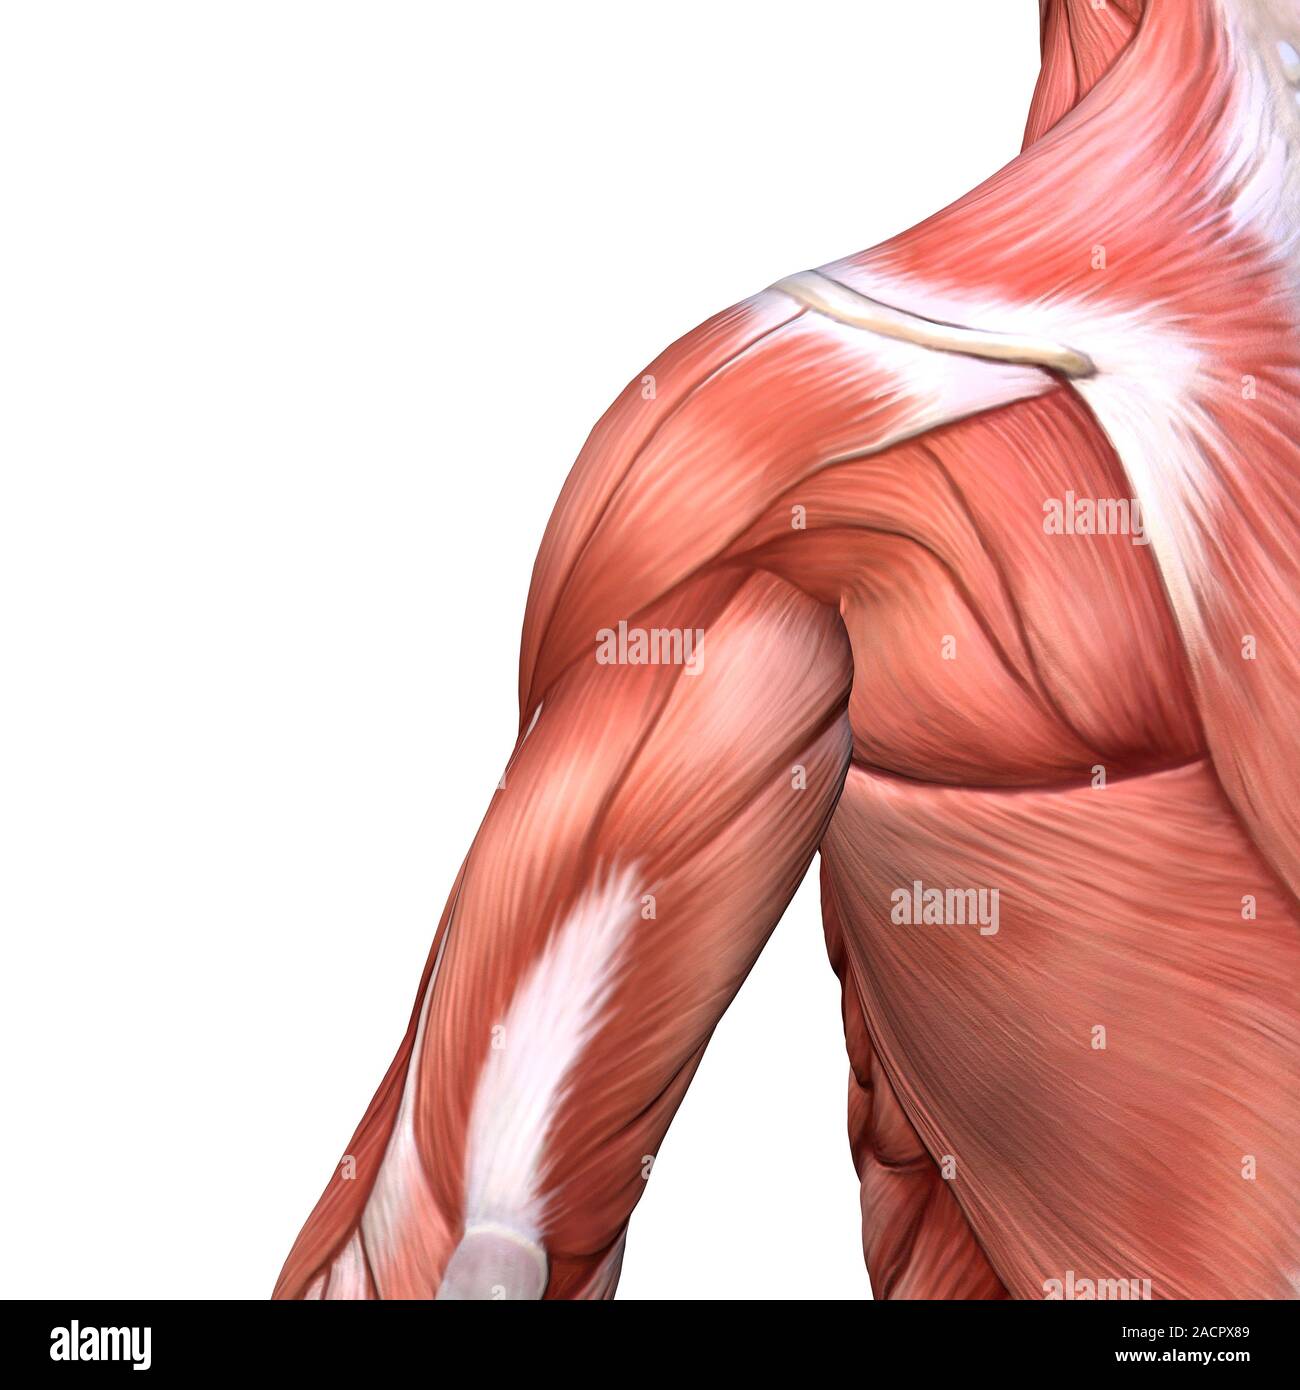 Spalla e muscoli della schiena. Illustrazione dei muscoli di una spalla  umana e la parte superiore della schiena in una posteriore (posteriore). I  muscoli mostrato qui includono il po Foto stock -